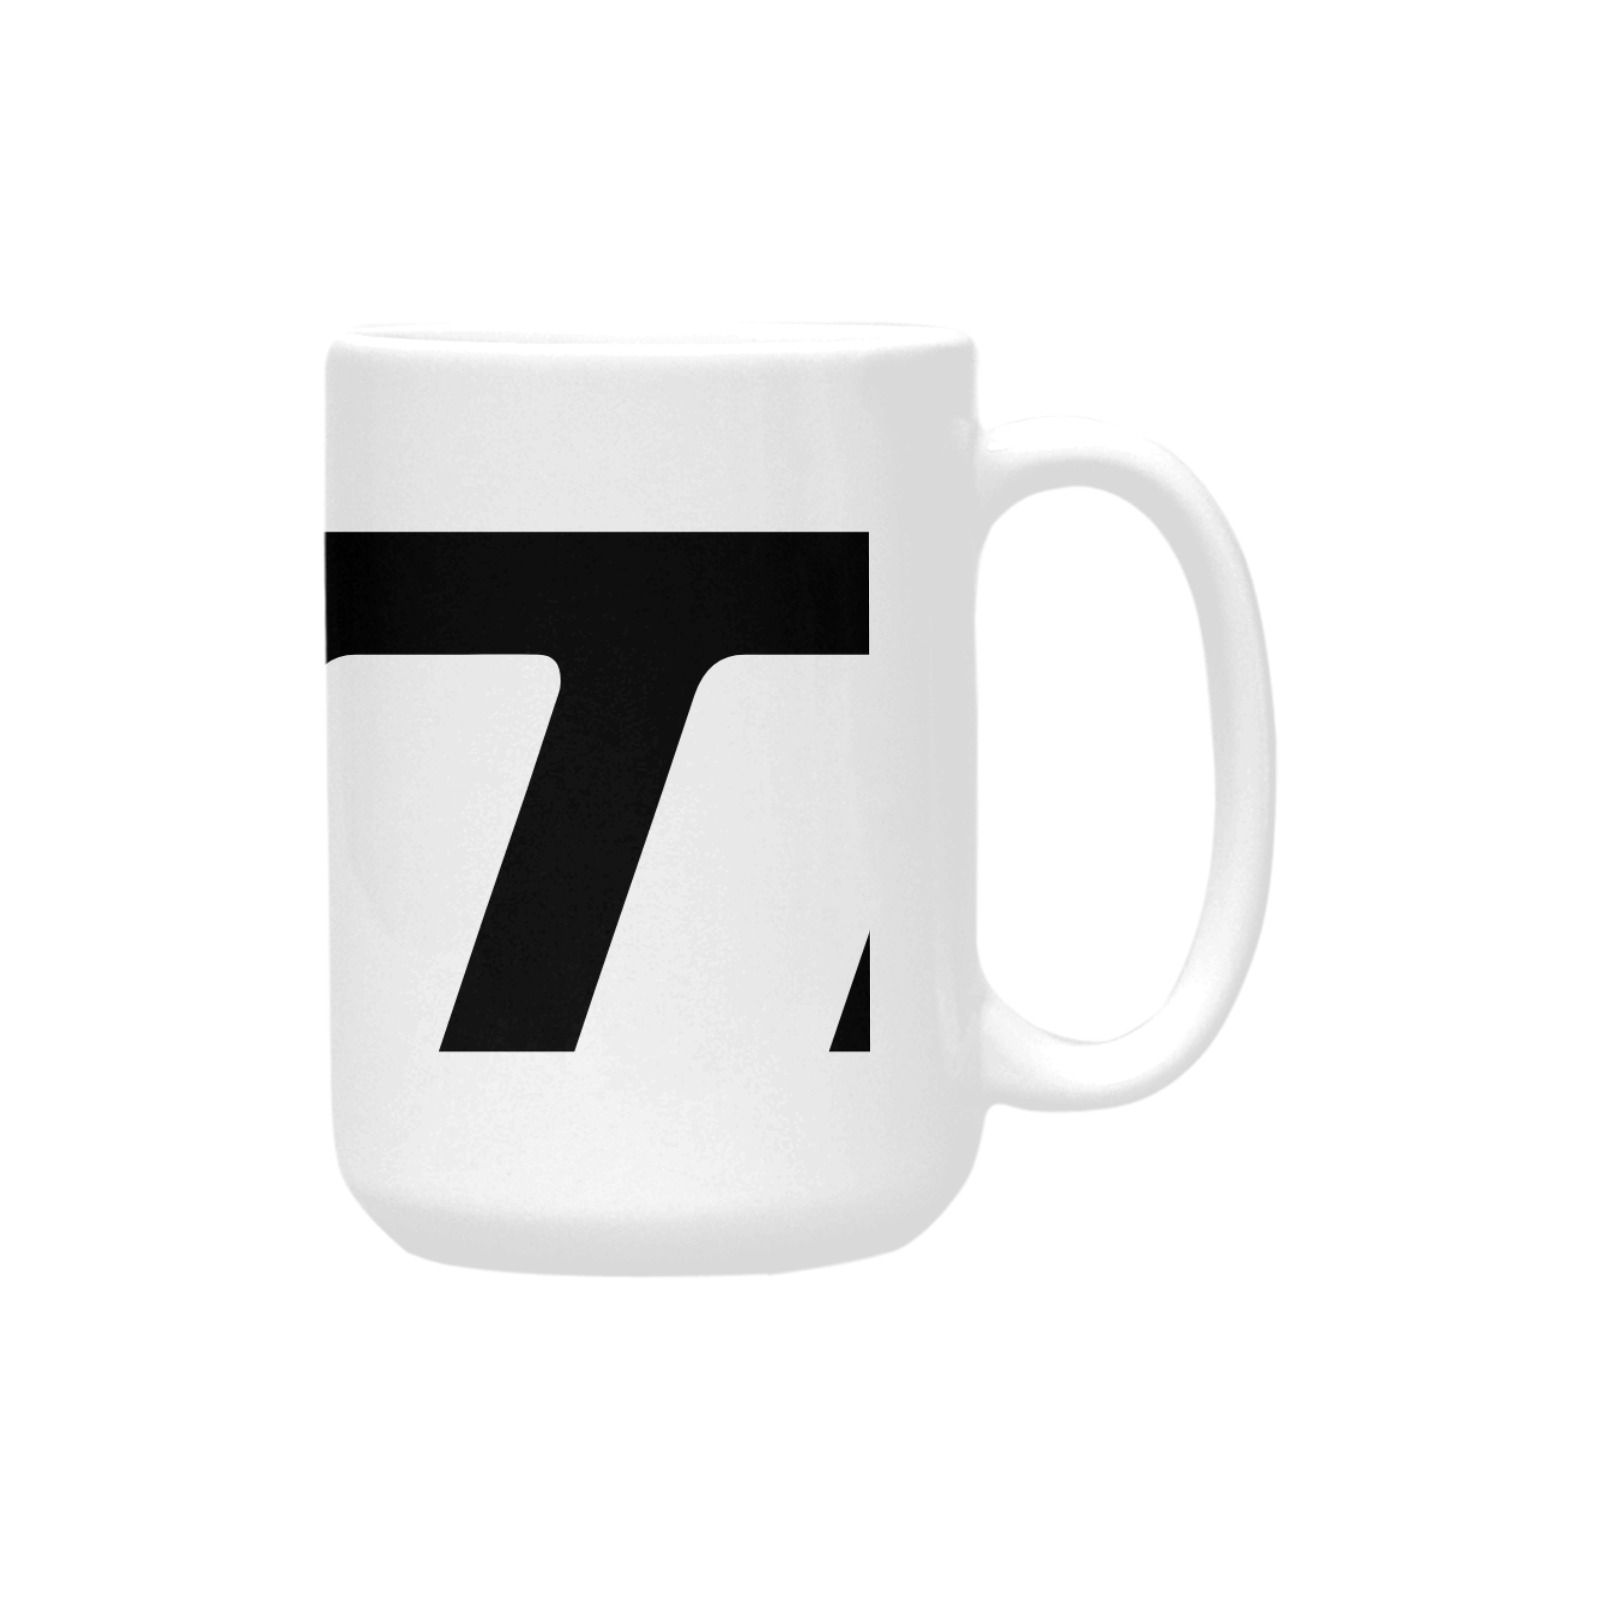 ceramic_mug_15oz-6770_tsm Custom Ceramic Mug (15oz)